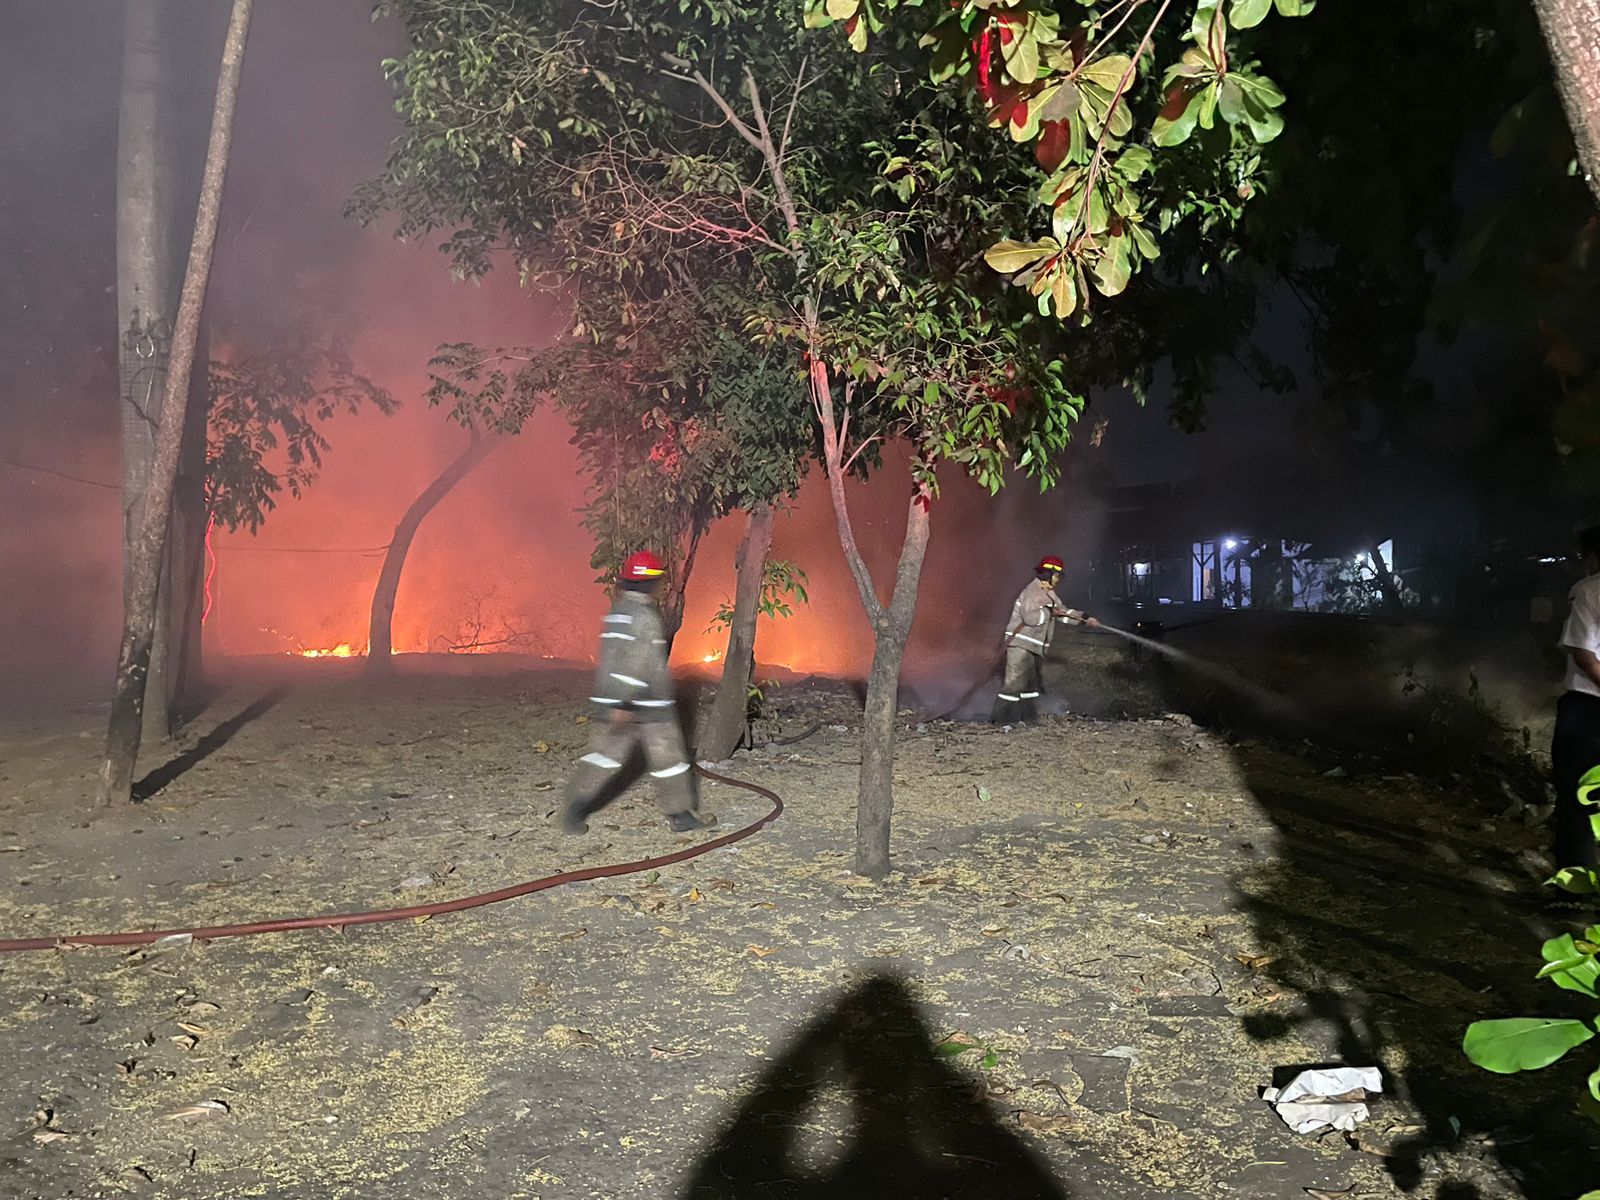  Kebakaran lahan kosong di Hutan kota, Jl. Pahlawan, Kelurahan Sidokumpul, Kecamatan Sidoarjo